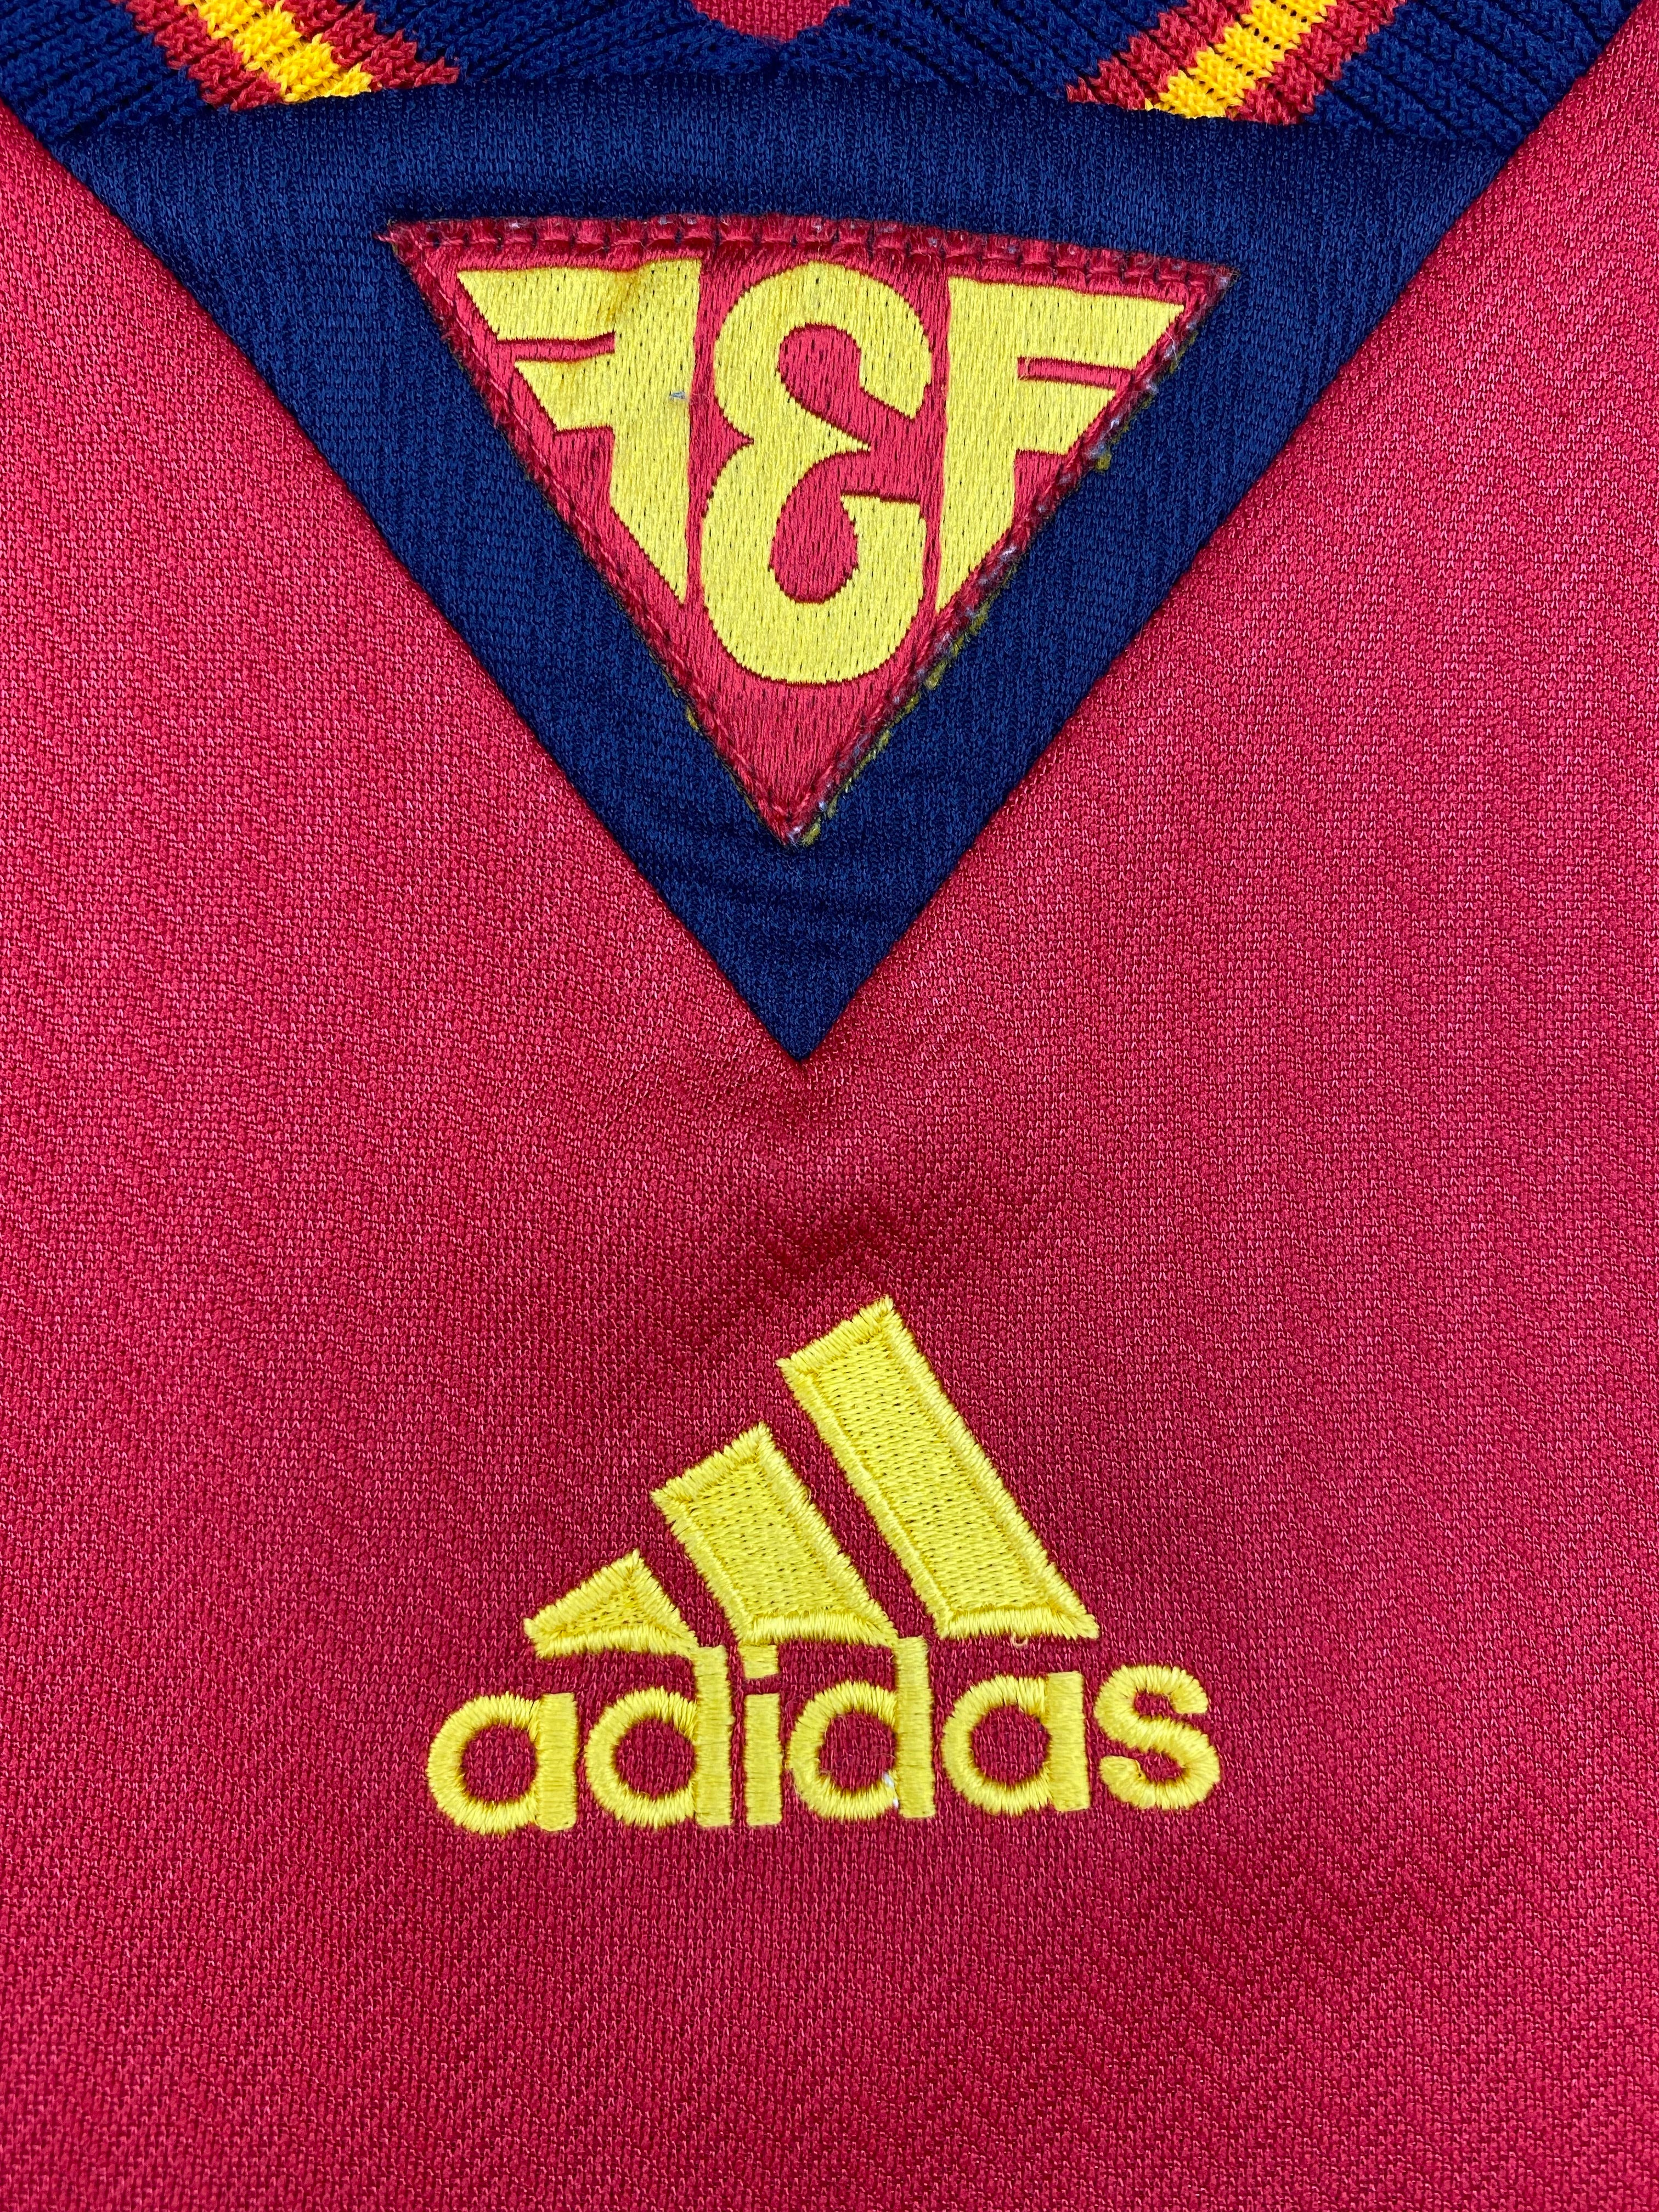 1998/99 Spain Home Shirt (M) 8.5/10